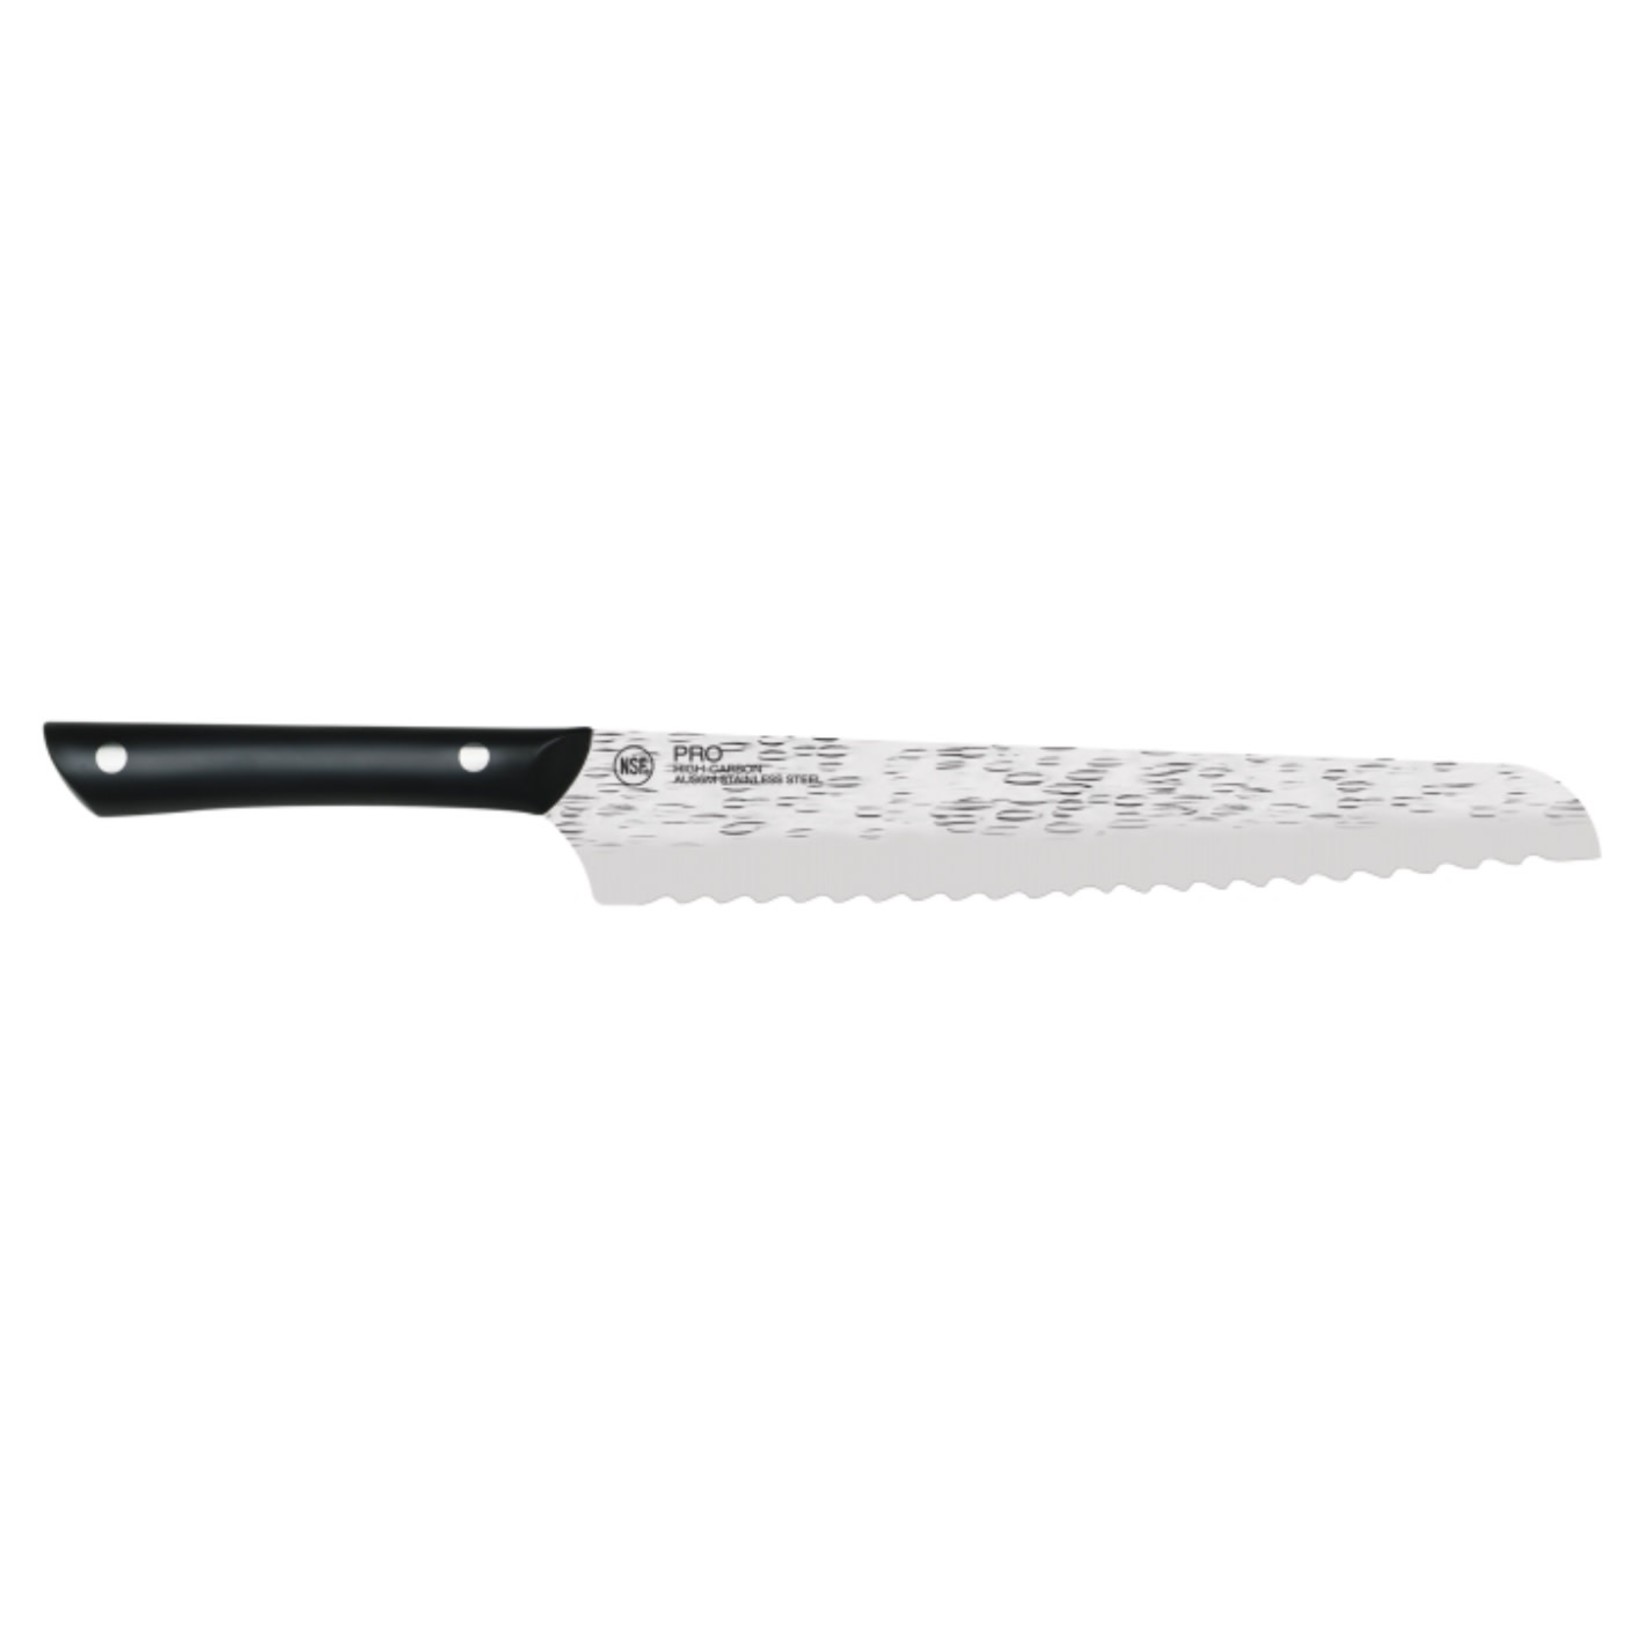 KAI KAI Professional Bread Knife 9" REG $81.99